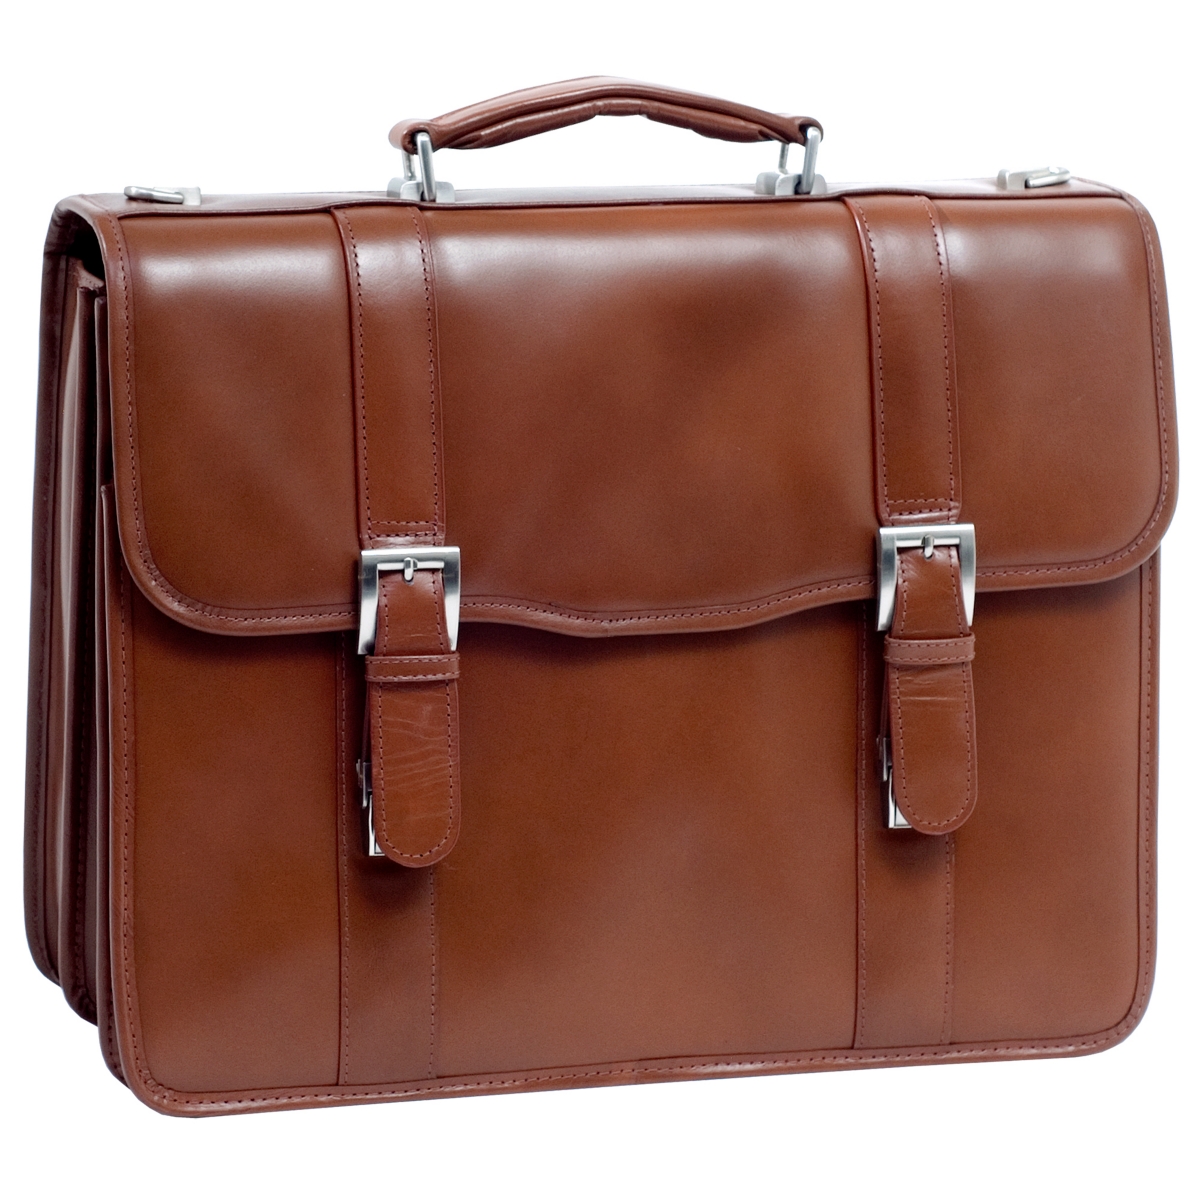 Flournoy, 15" Double Compartment Laptop Briefcase - Brown